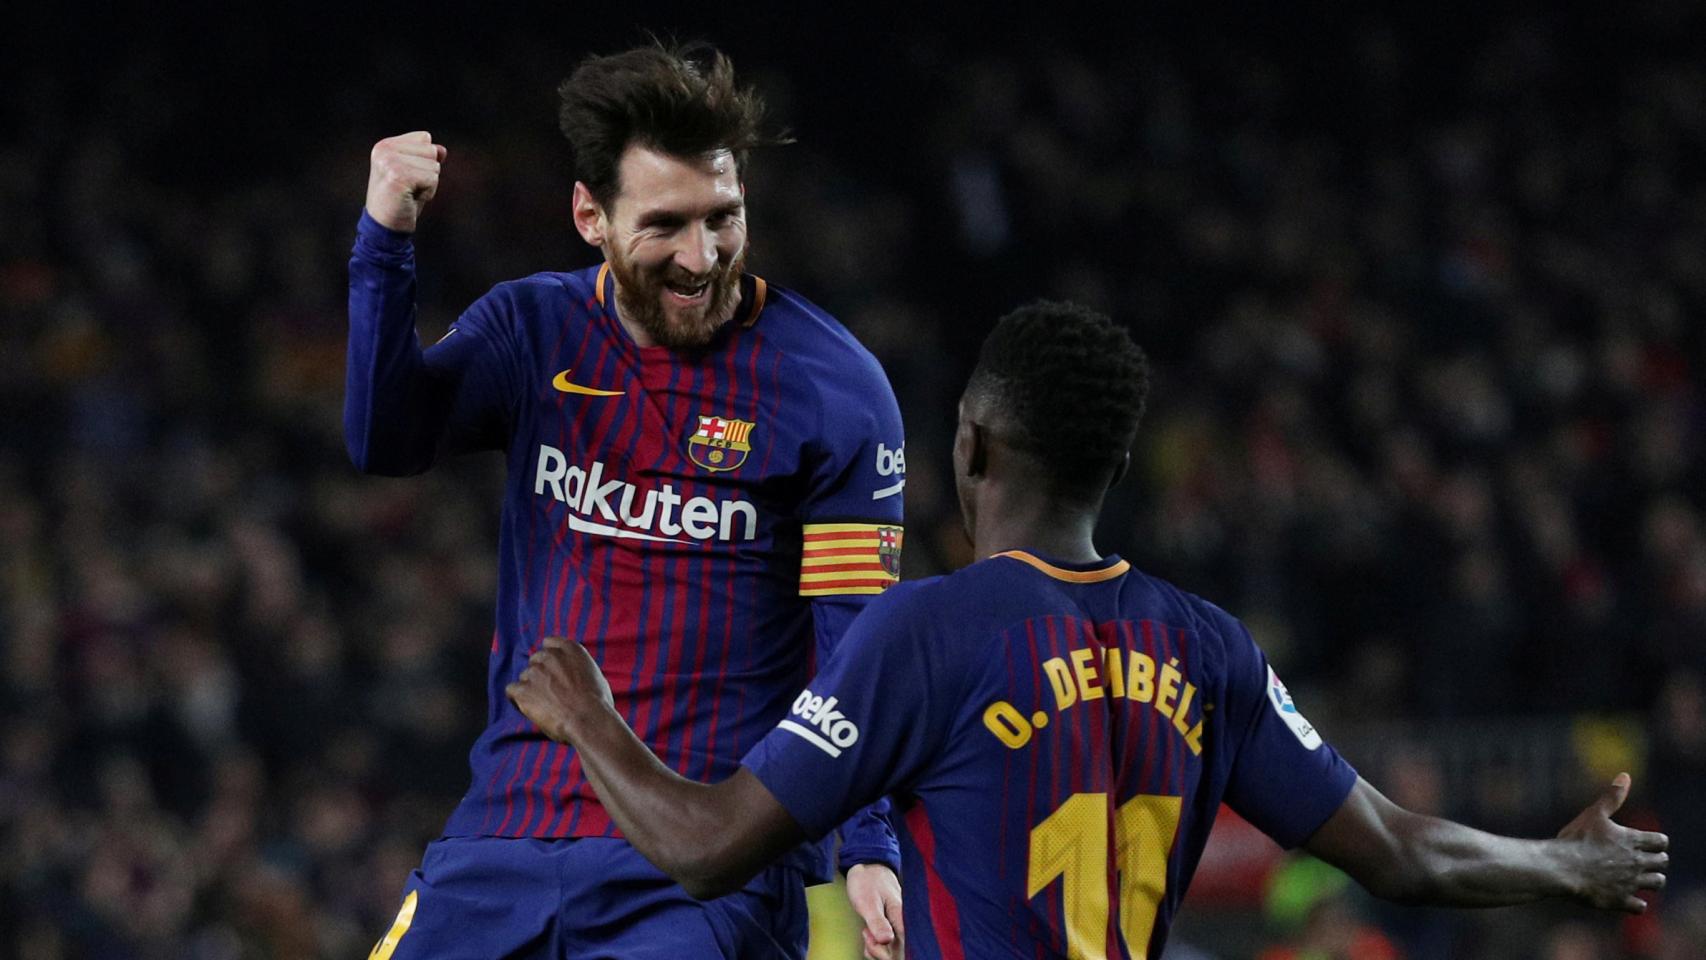 Messi celebra con Dembélé un gol ante el Girona.